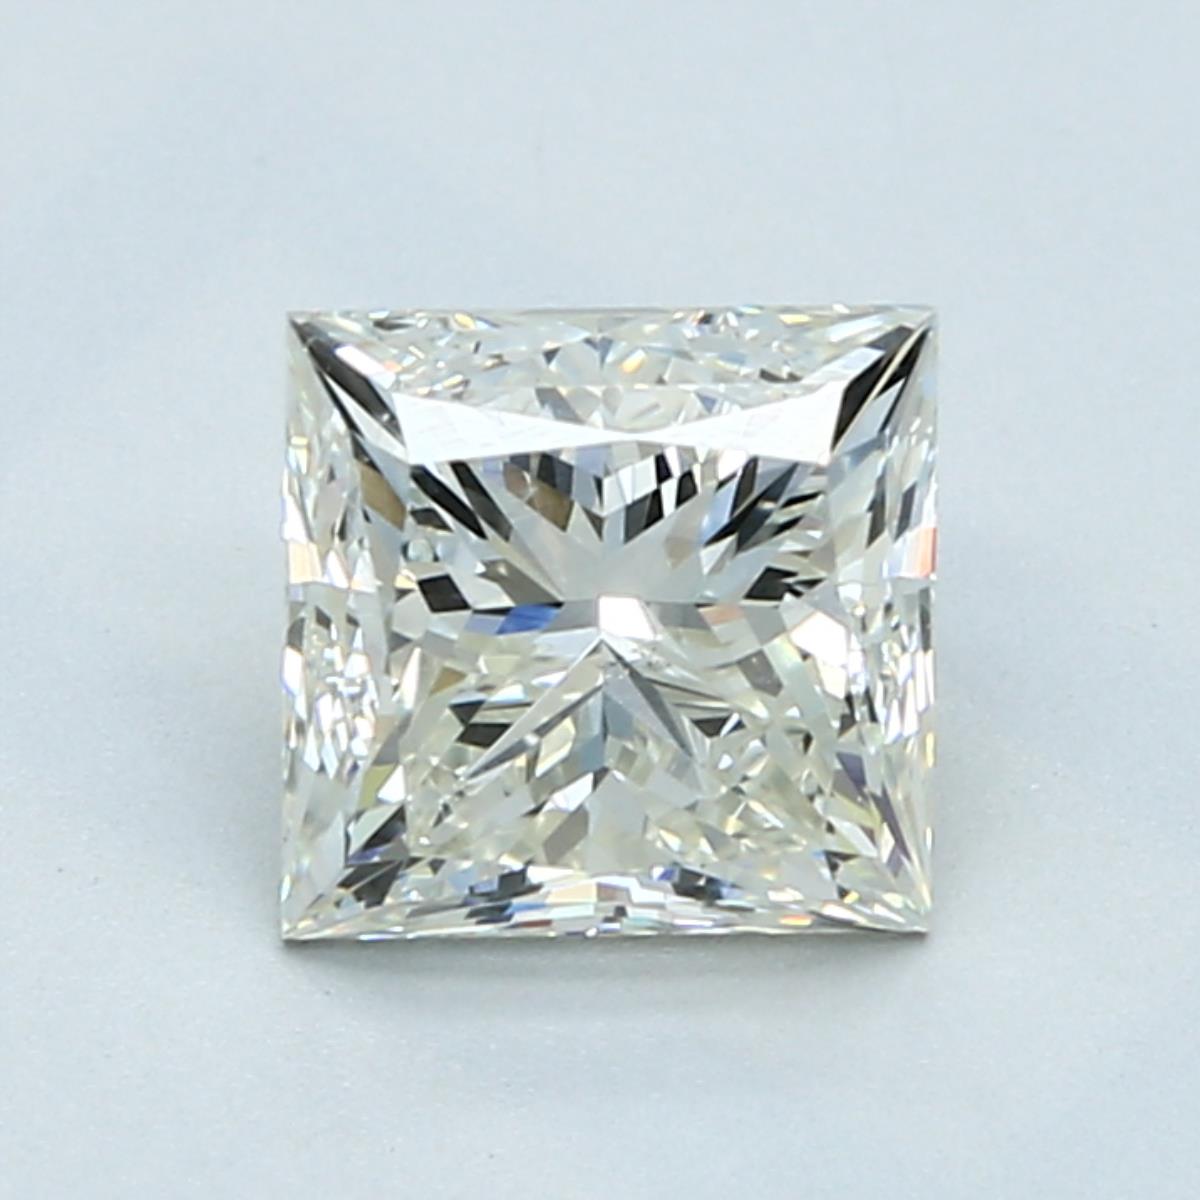 1.7 Carat Princess Cut Natural Diamond